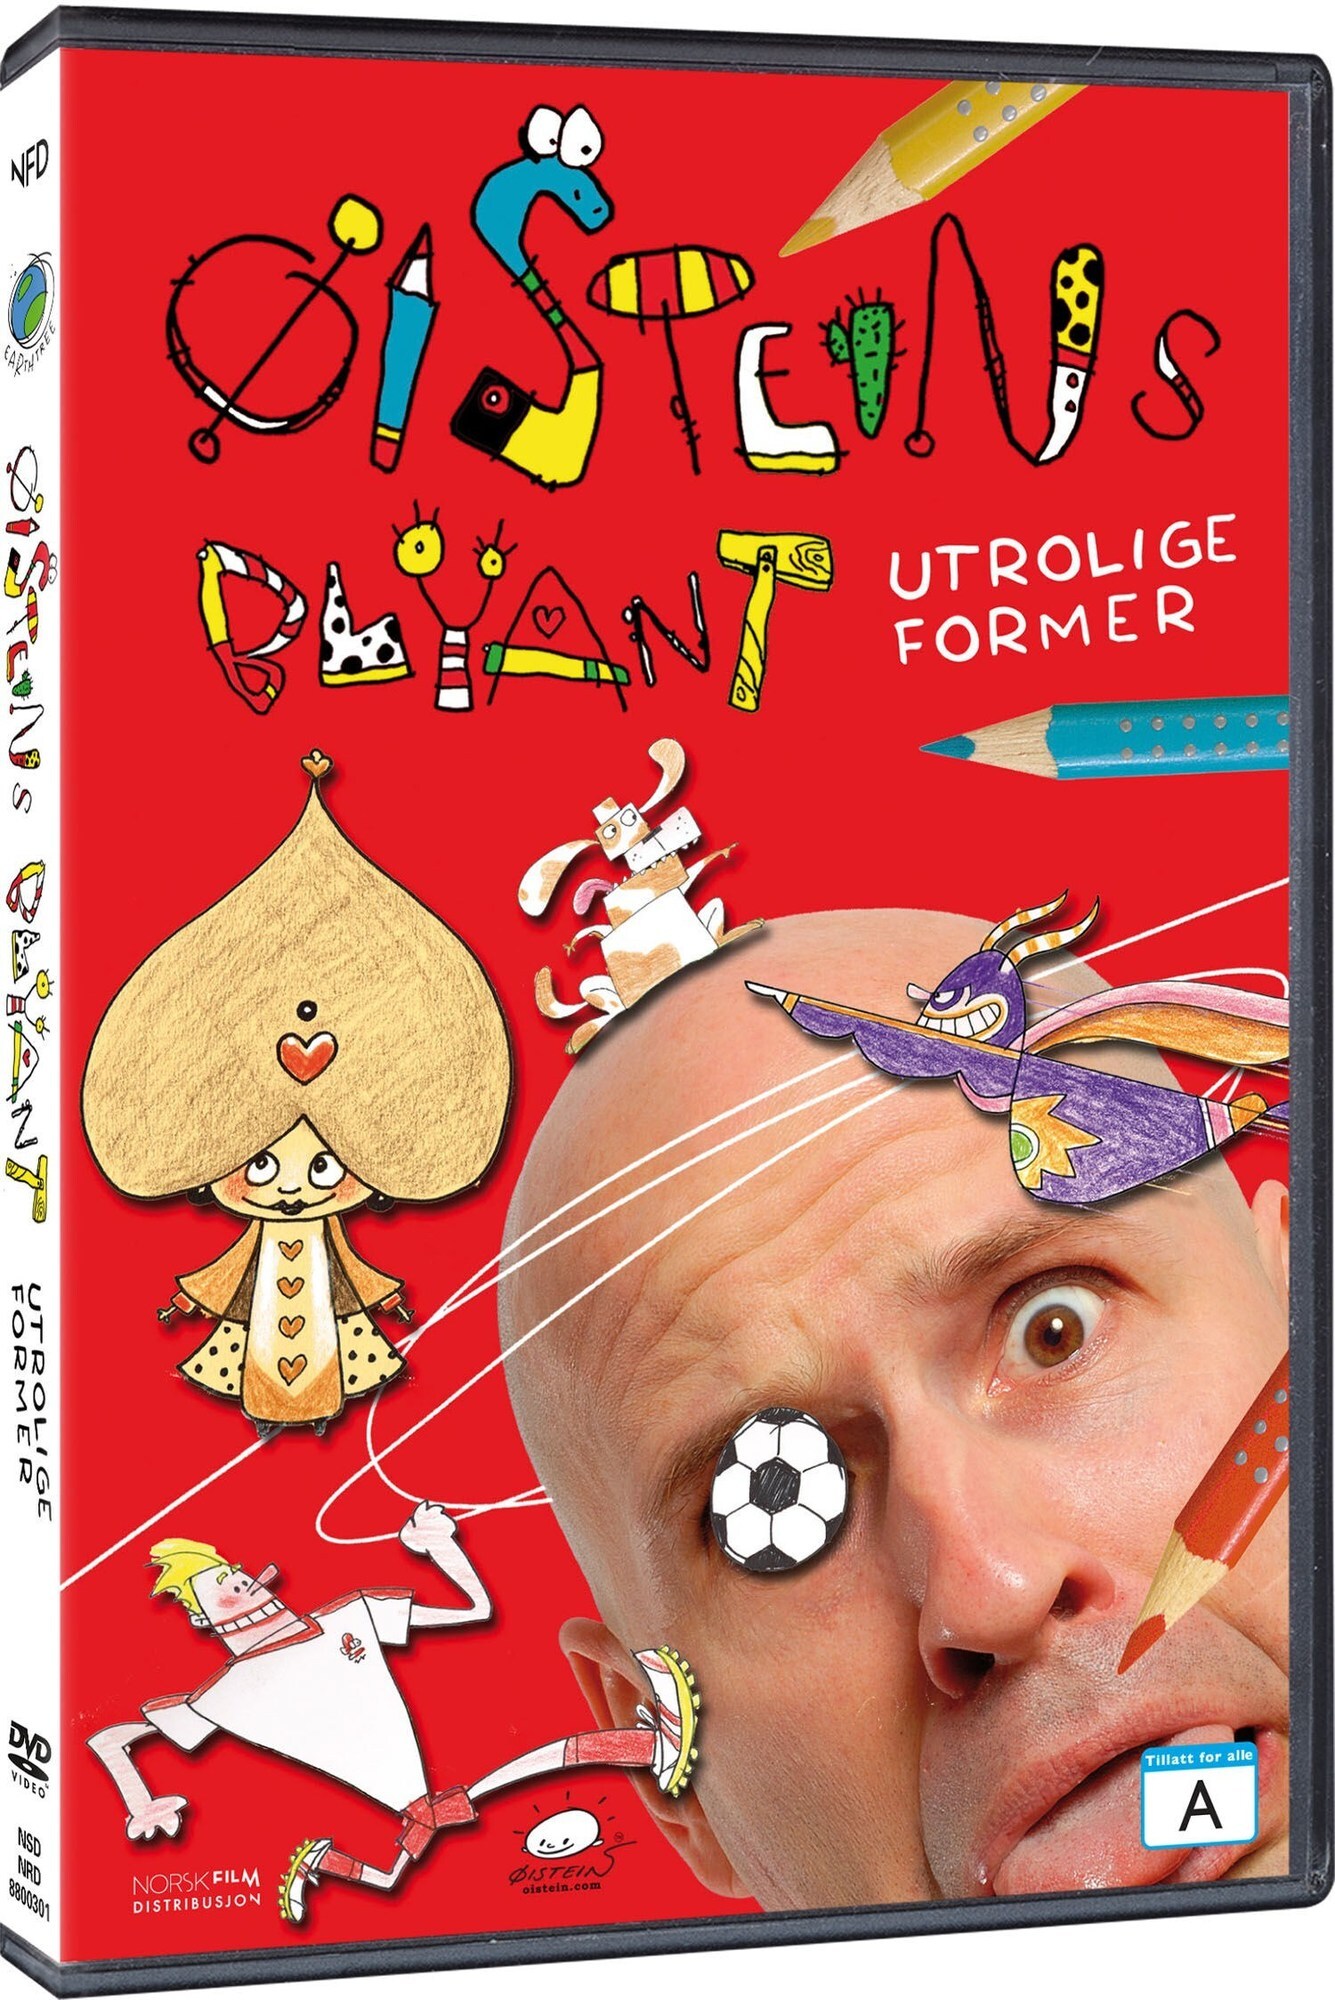 Øisteins Blyant: Utrolige Former (DVD) - Elkjøp